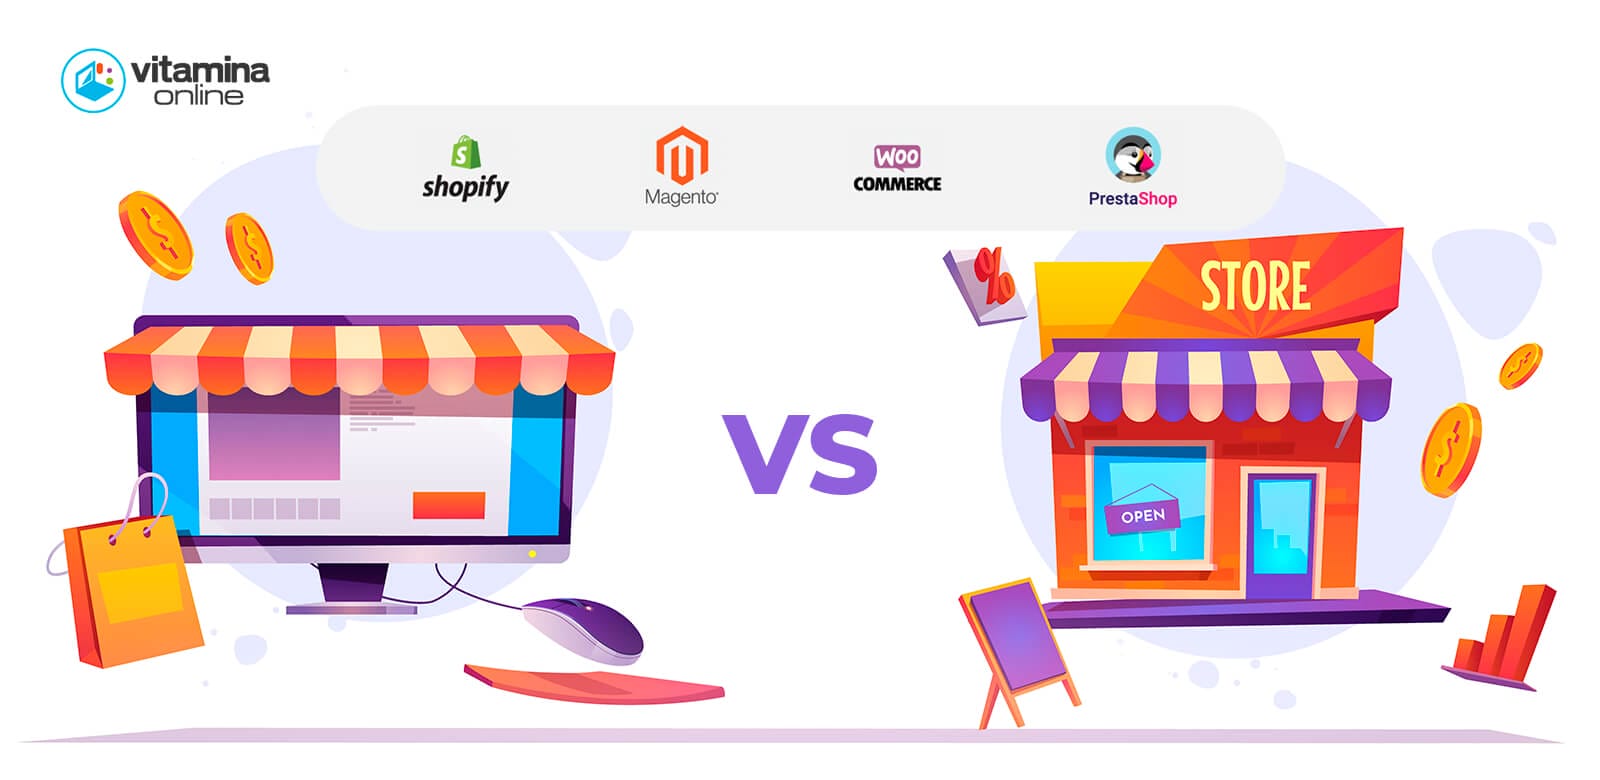 Comparación de plataformas de comercio electrónico (2021): Shopify vs Magento vs WooCommerce vs PrestaShop